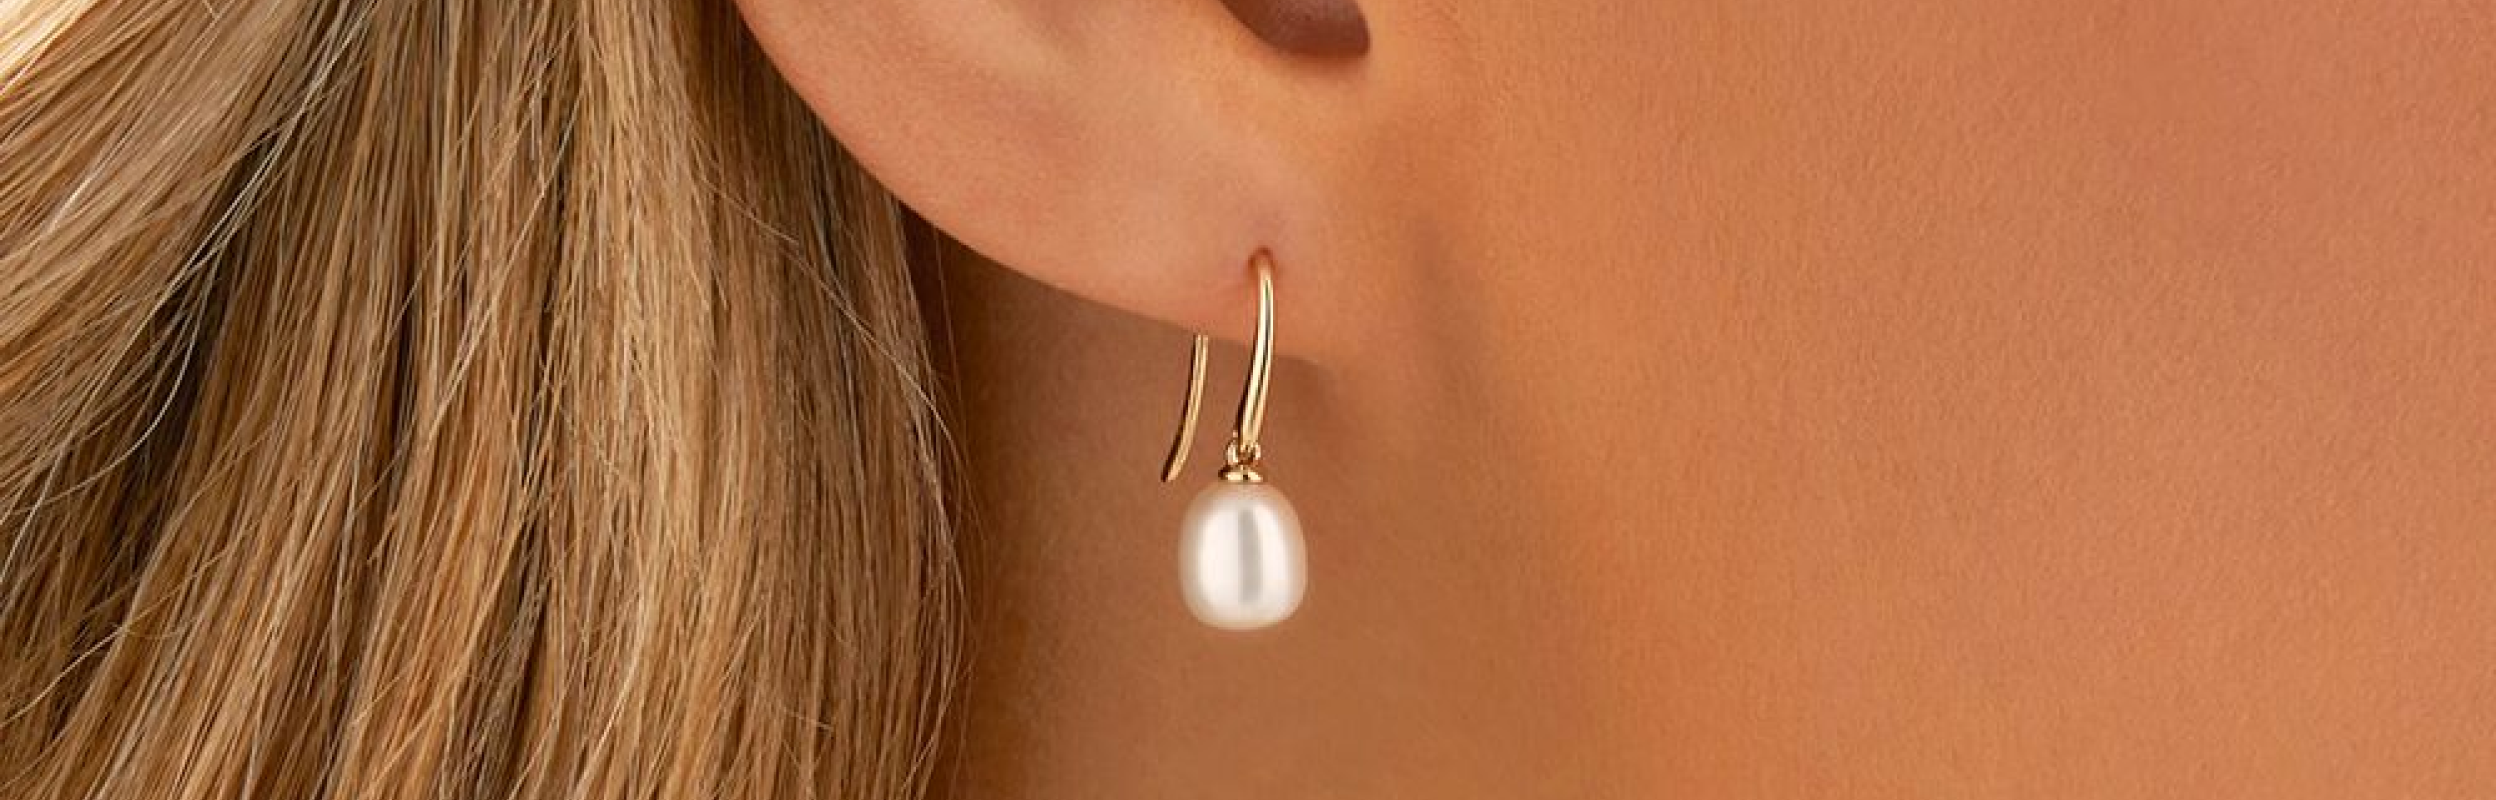 bride wearing pearl wedding earrings